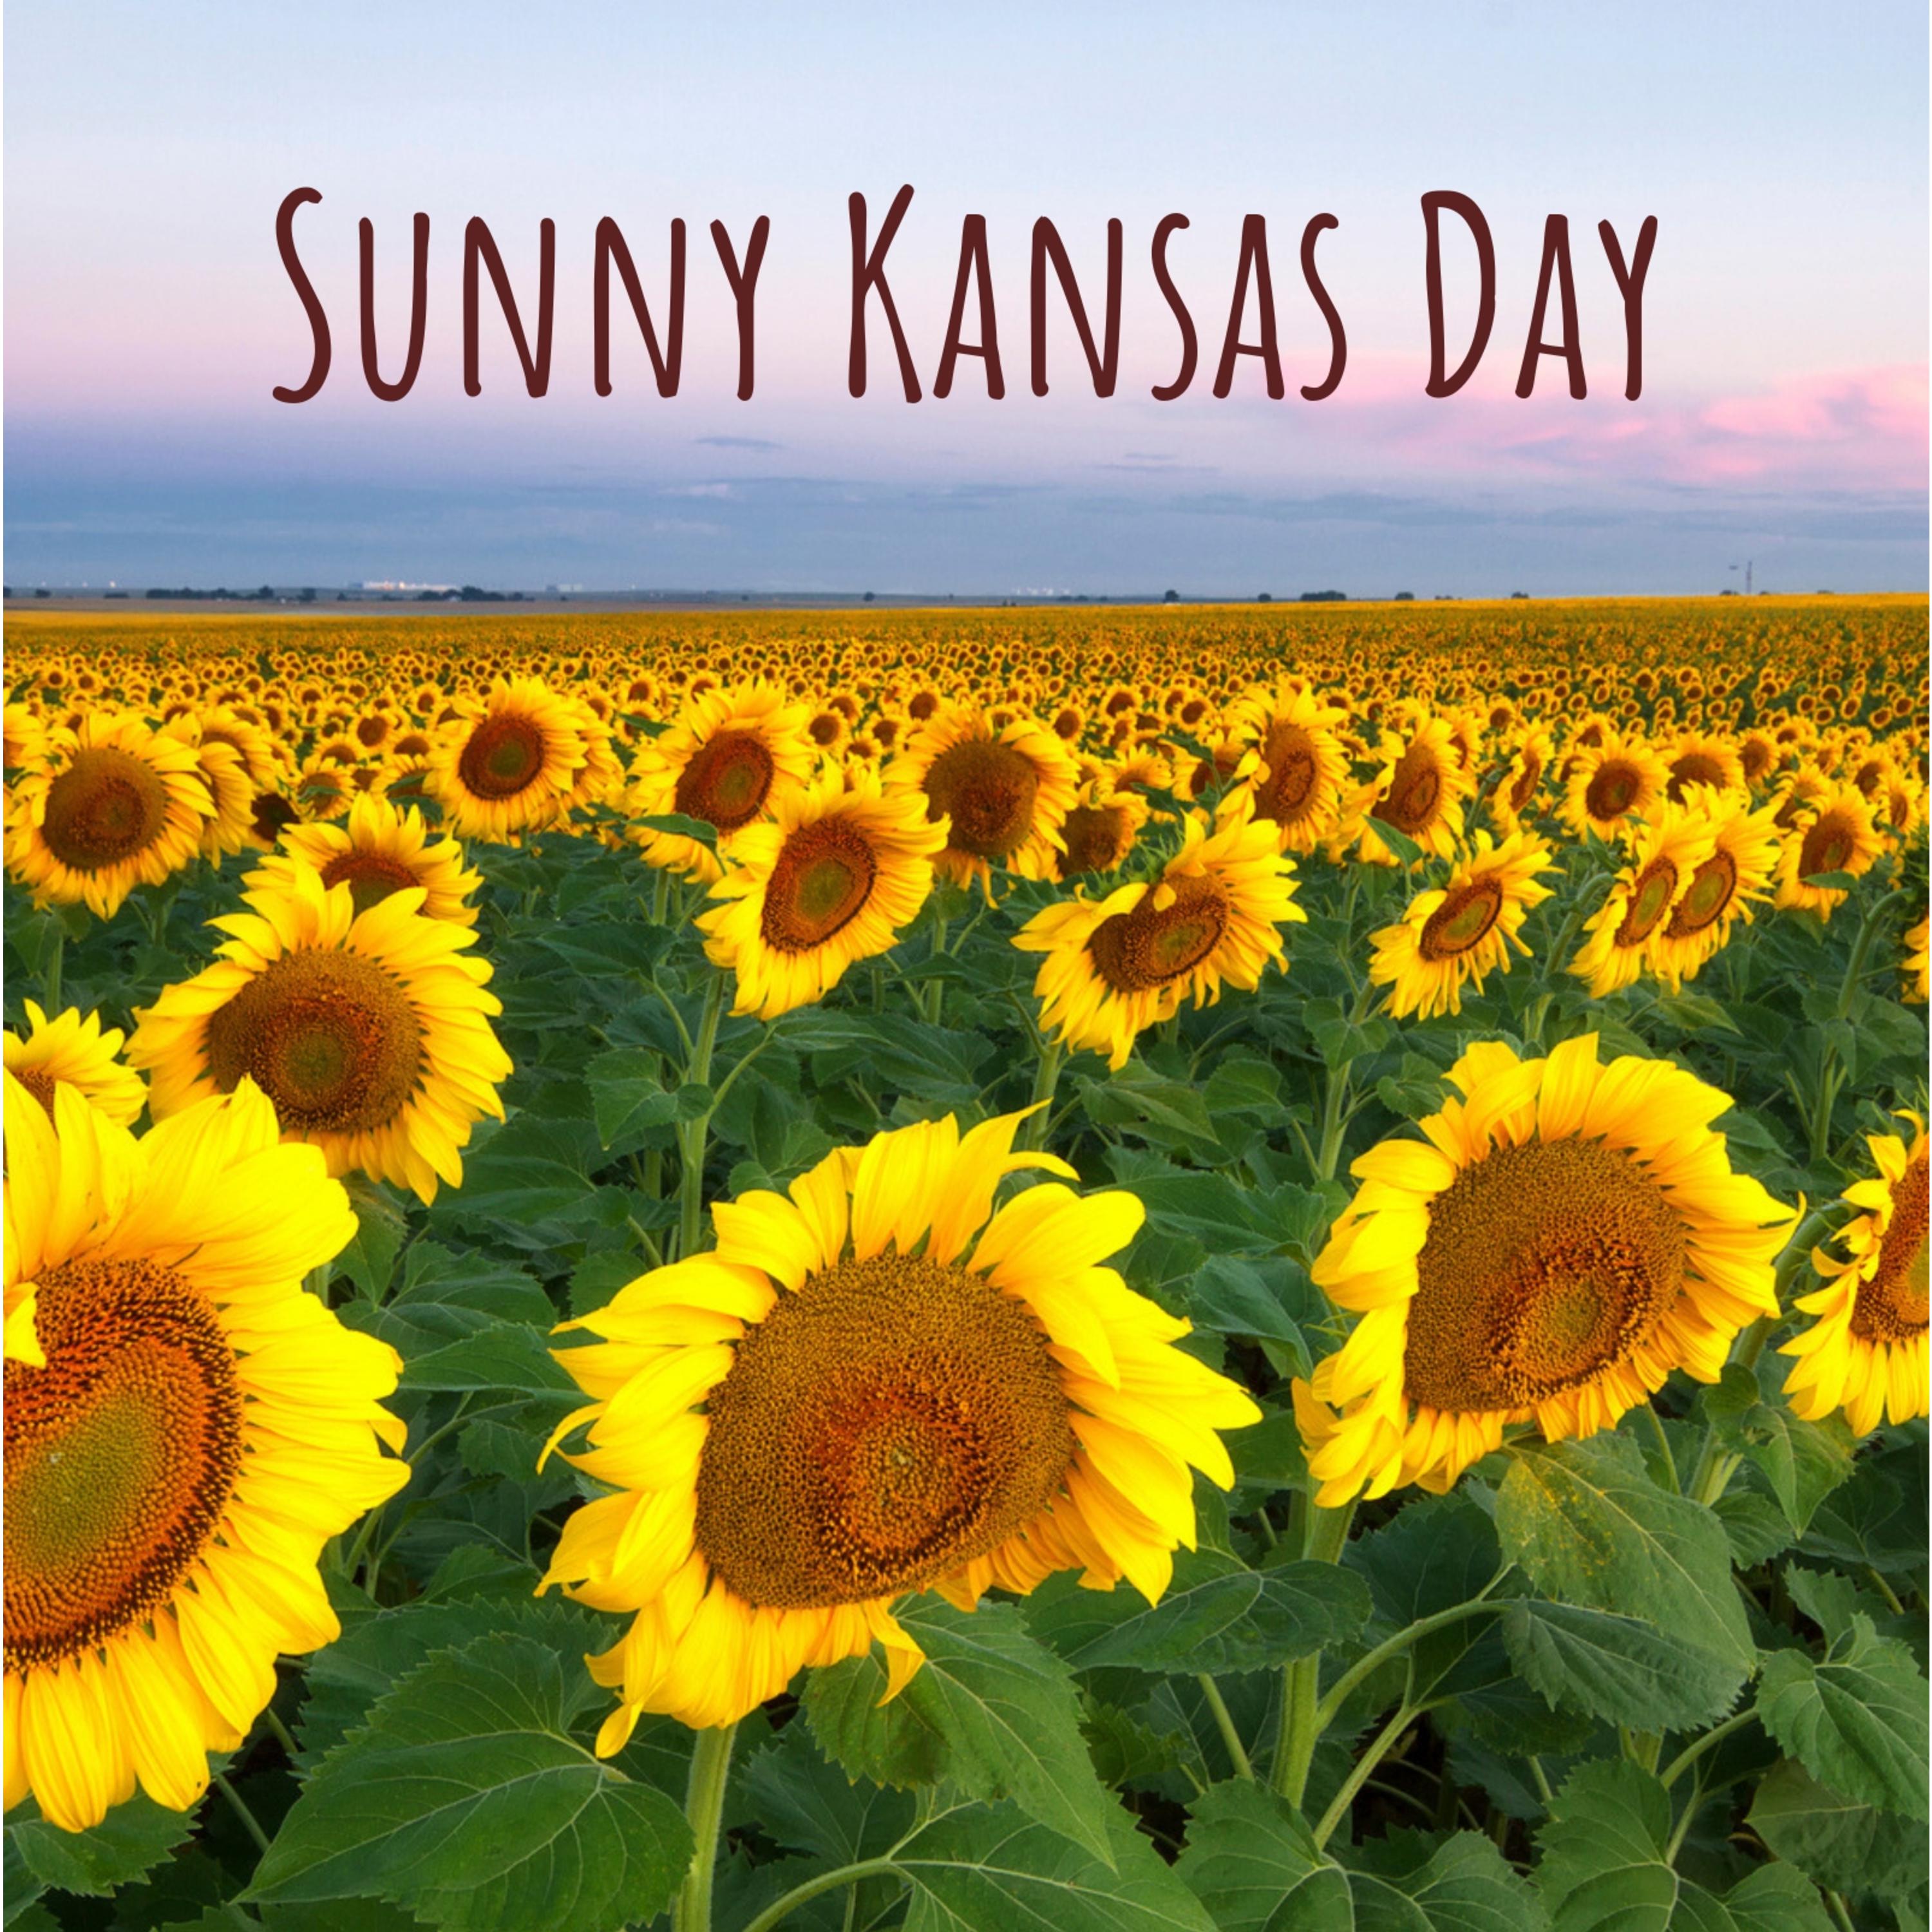 Sunny Kansas Day